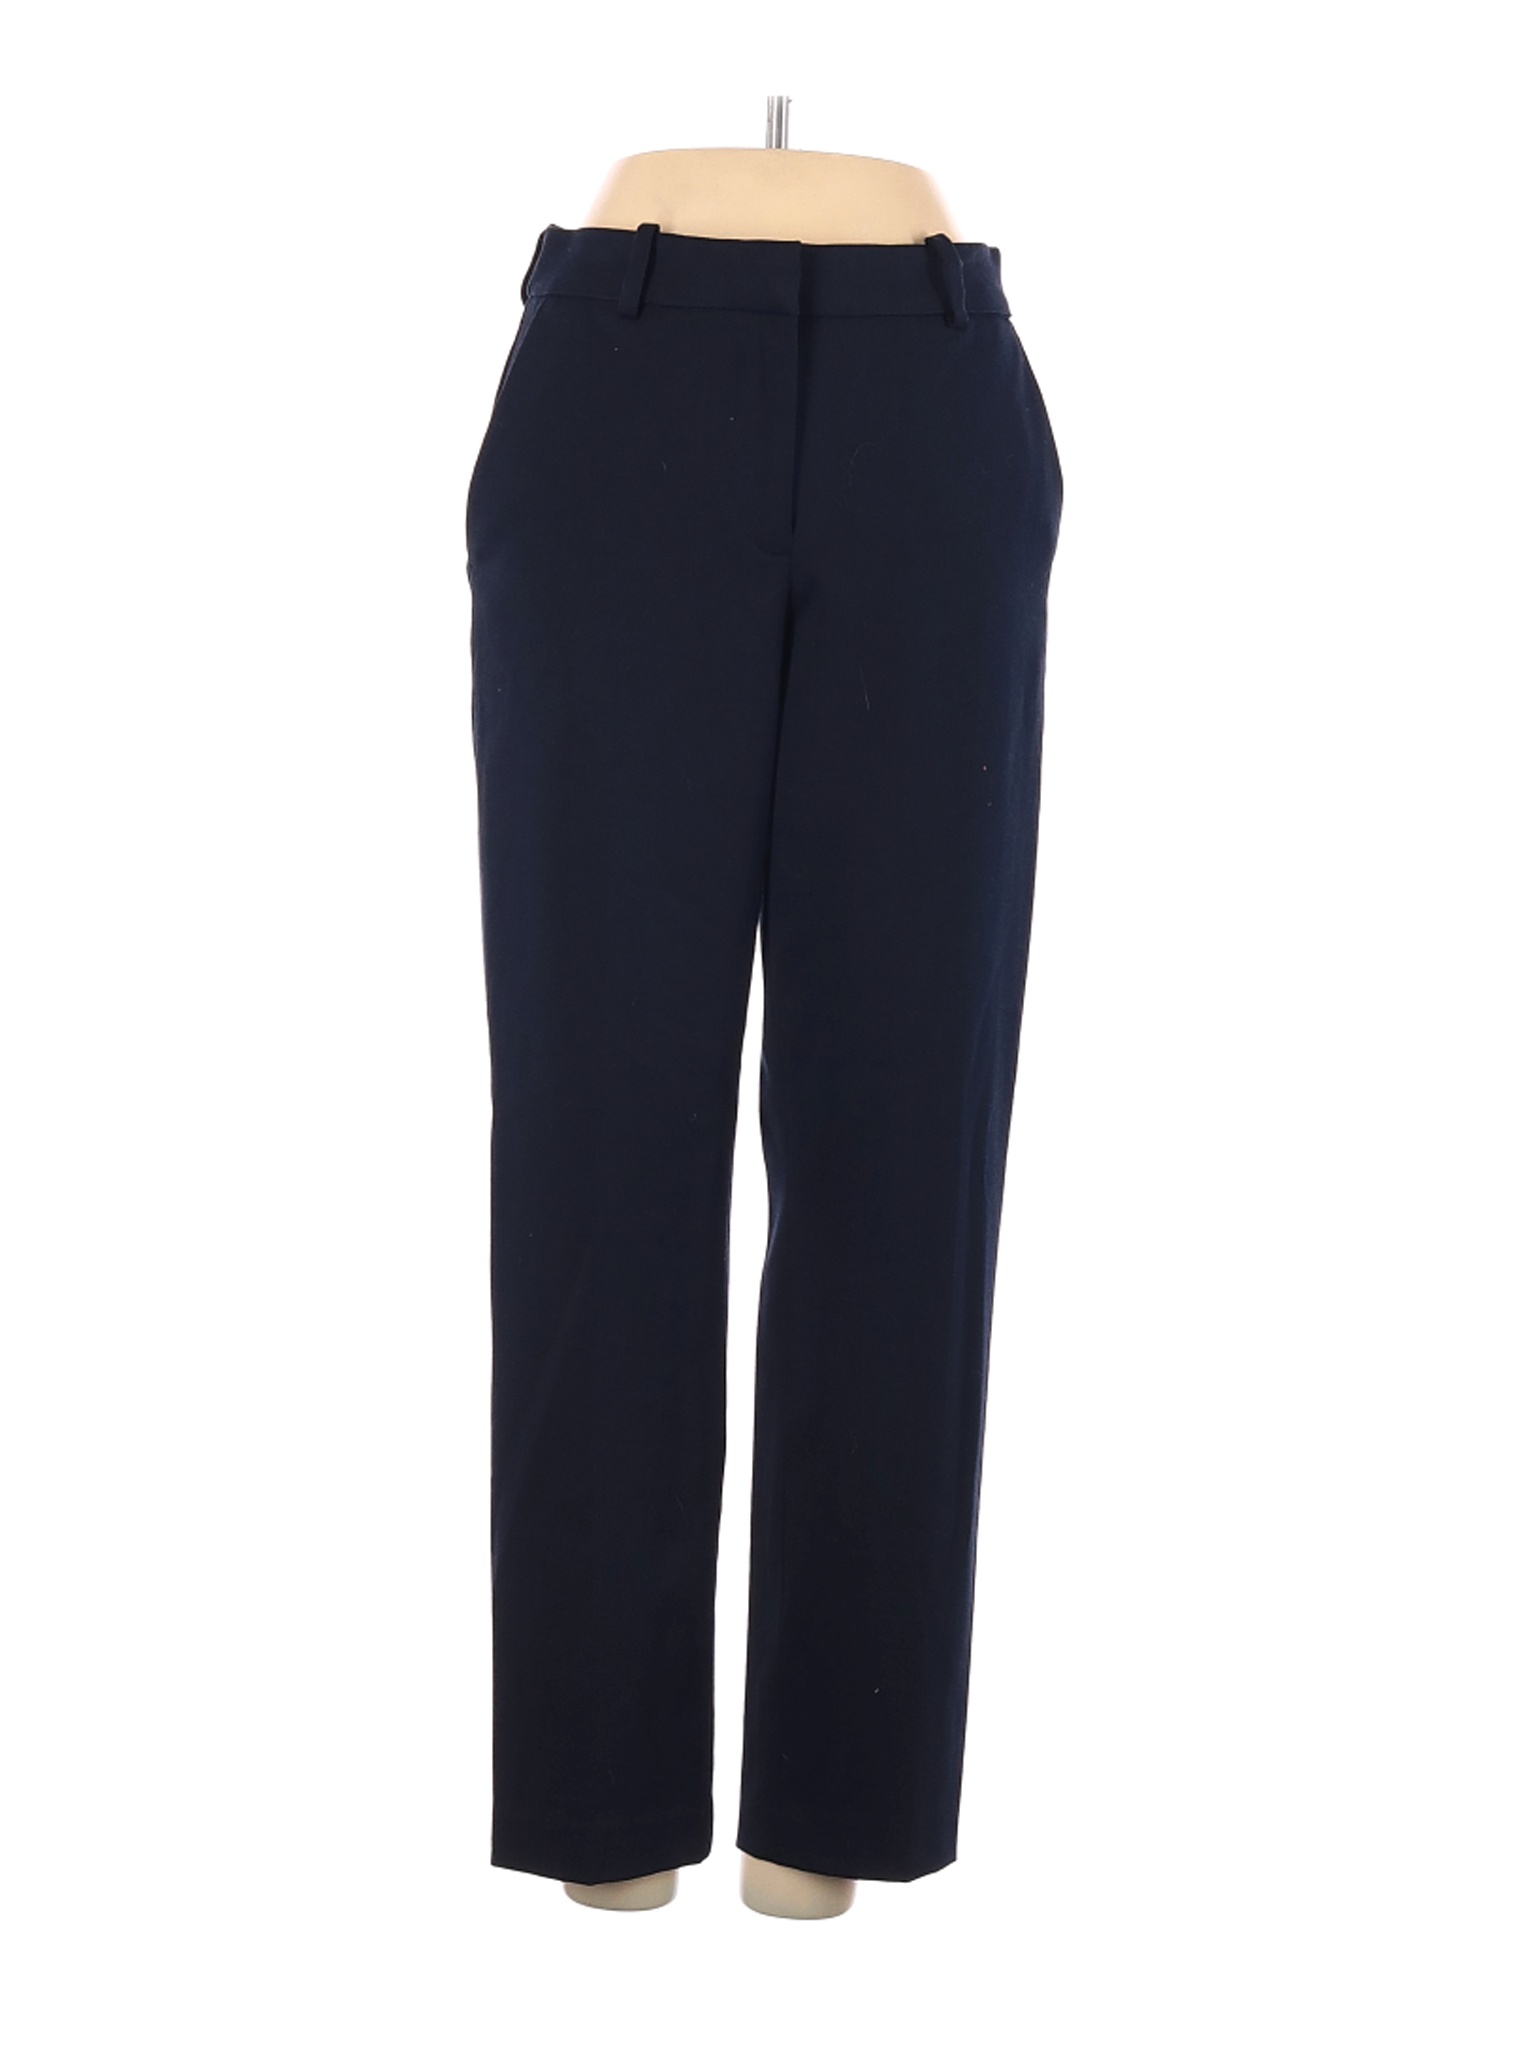 H&M Women Blue Dress Pants 2 | eBay